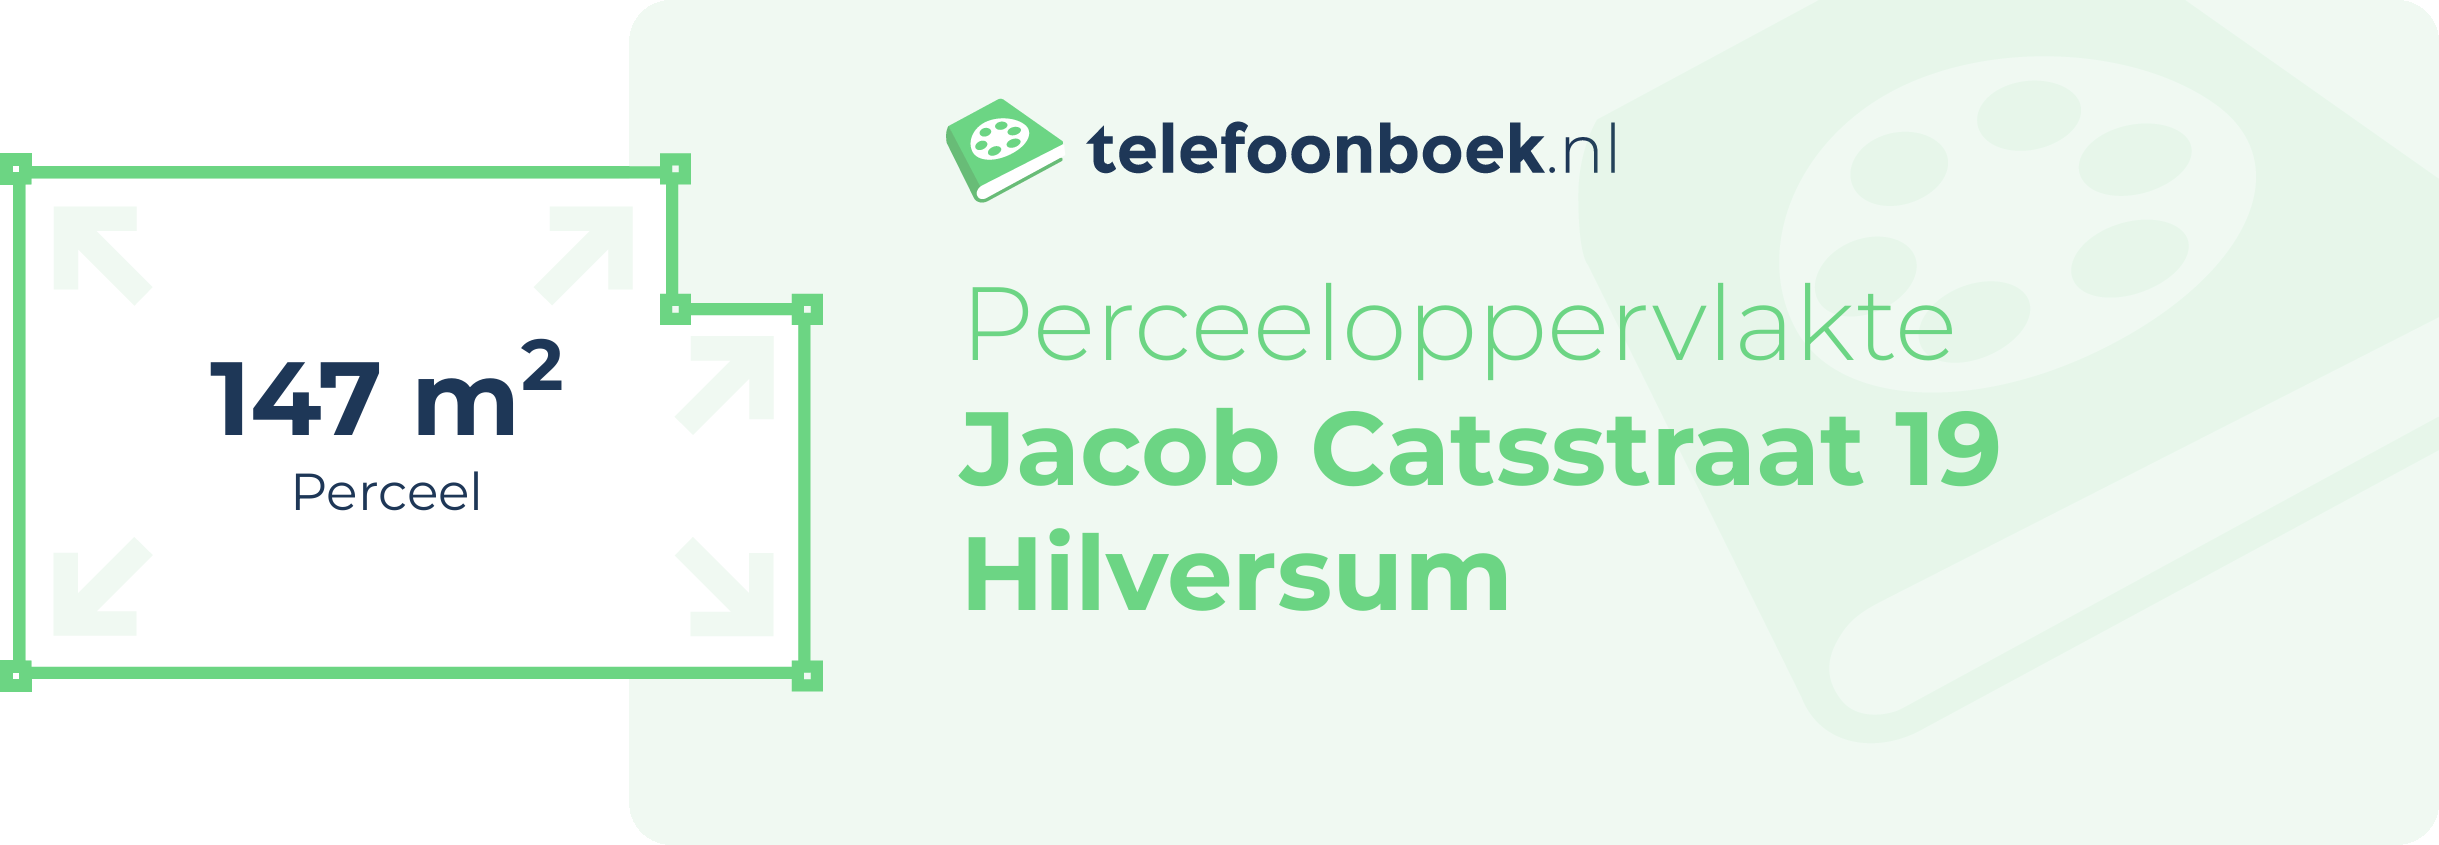 Perceeloppervlakte Jacob Catsstraat 19 Hilversum